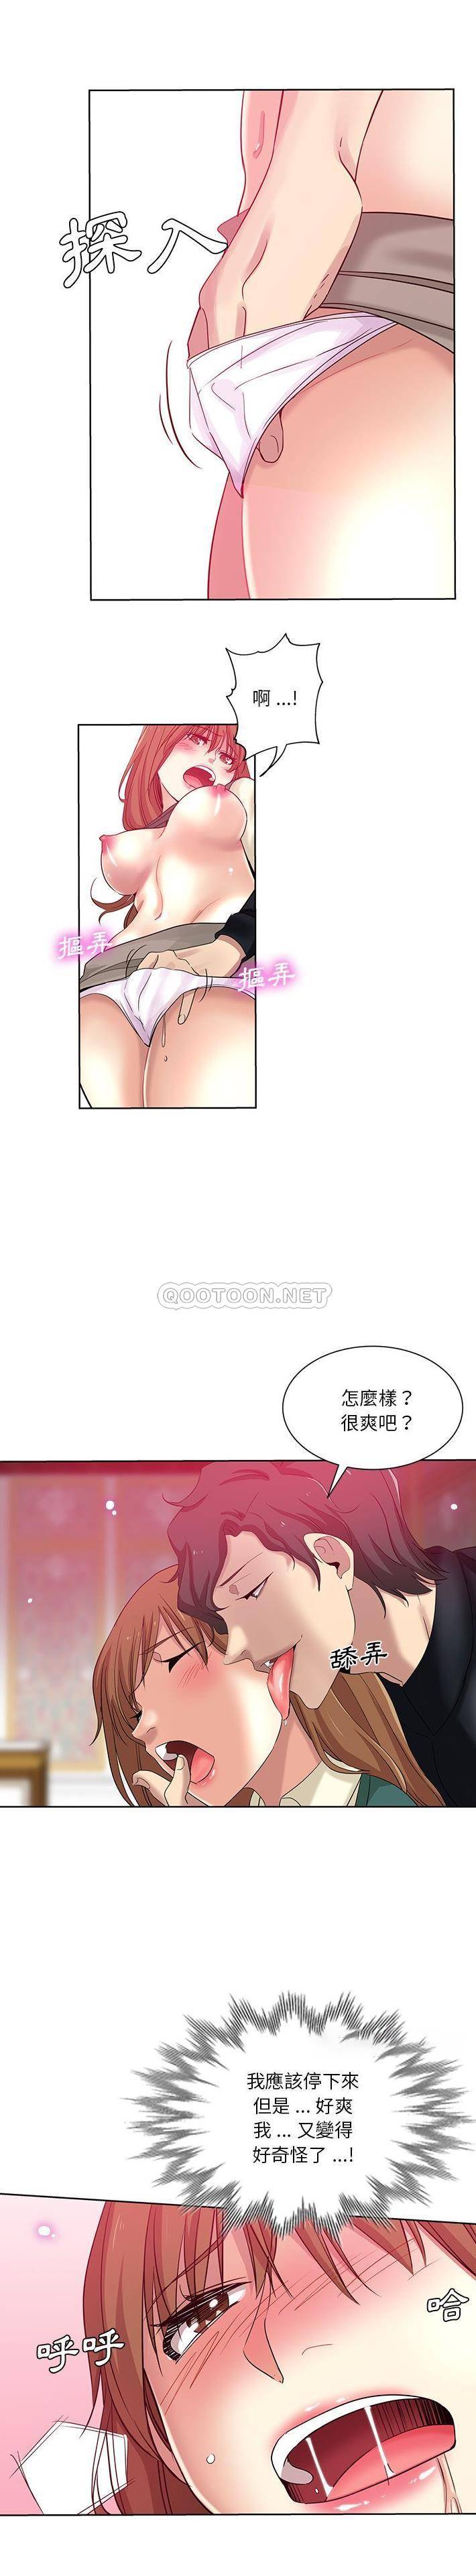 韩国污漫画 危險純友誼 第25话 8